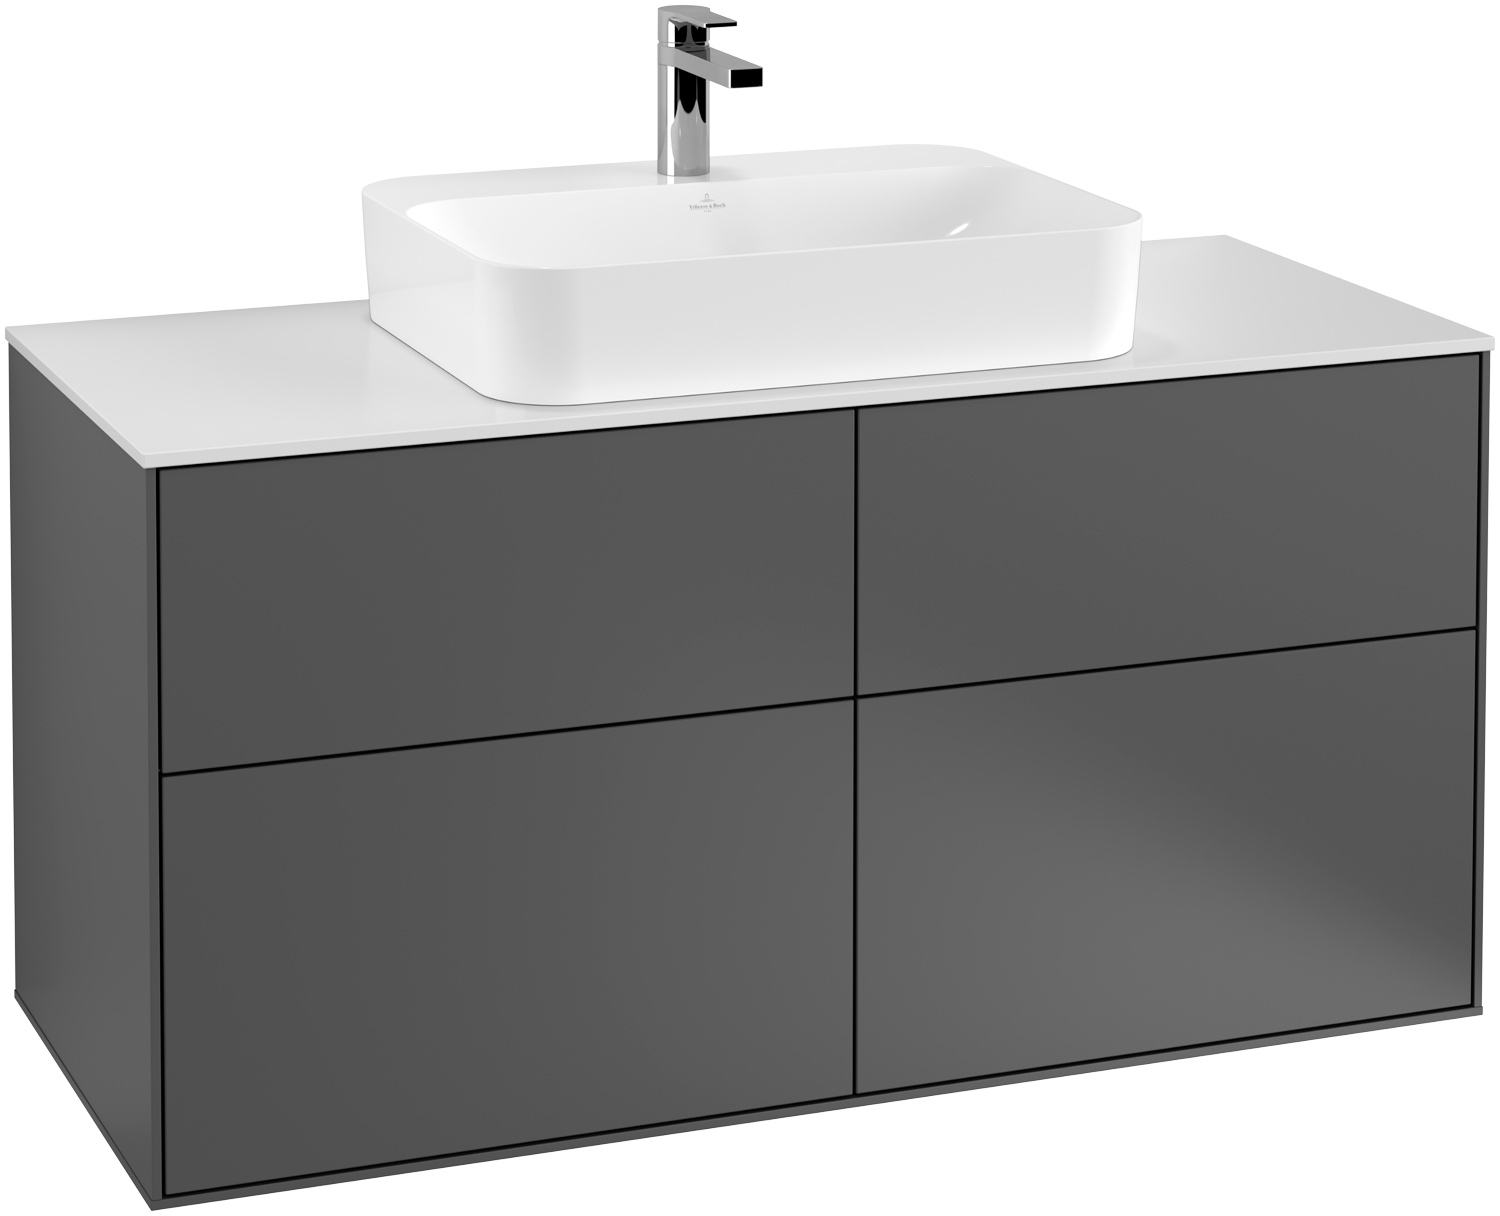 Villeroy & Boch Waschtischunterschrank „Finion“ für Schrankwaschtisch 120 × 60,3 × 50,1 cm 4 Schubladen, für Waschtischposition mittig